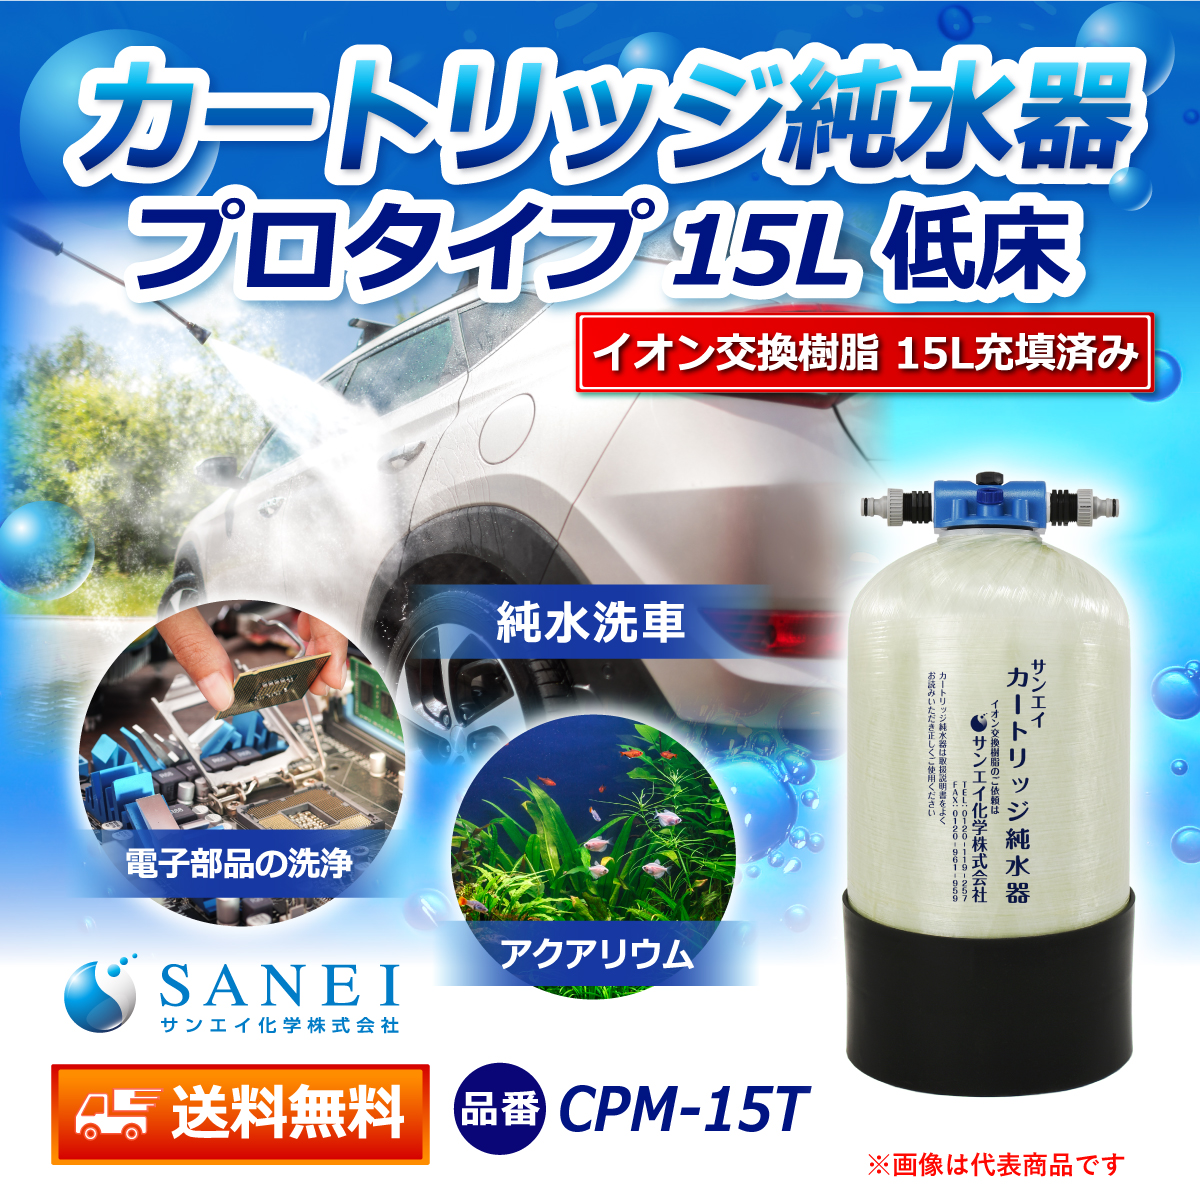 サンエイ化学 カートリッジ純水器 15L プロタイプ 低床タイプ CPM-15T イオン交換樹脂 15L入り【純水器 本体単品】